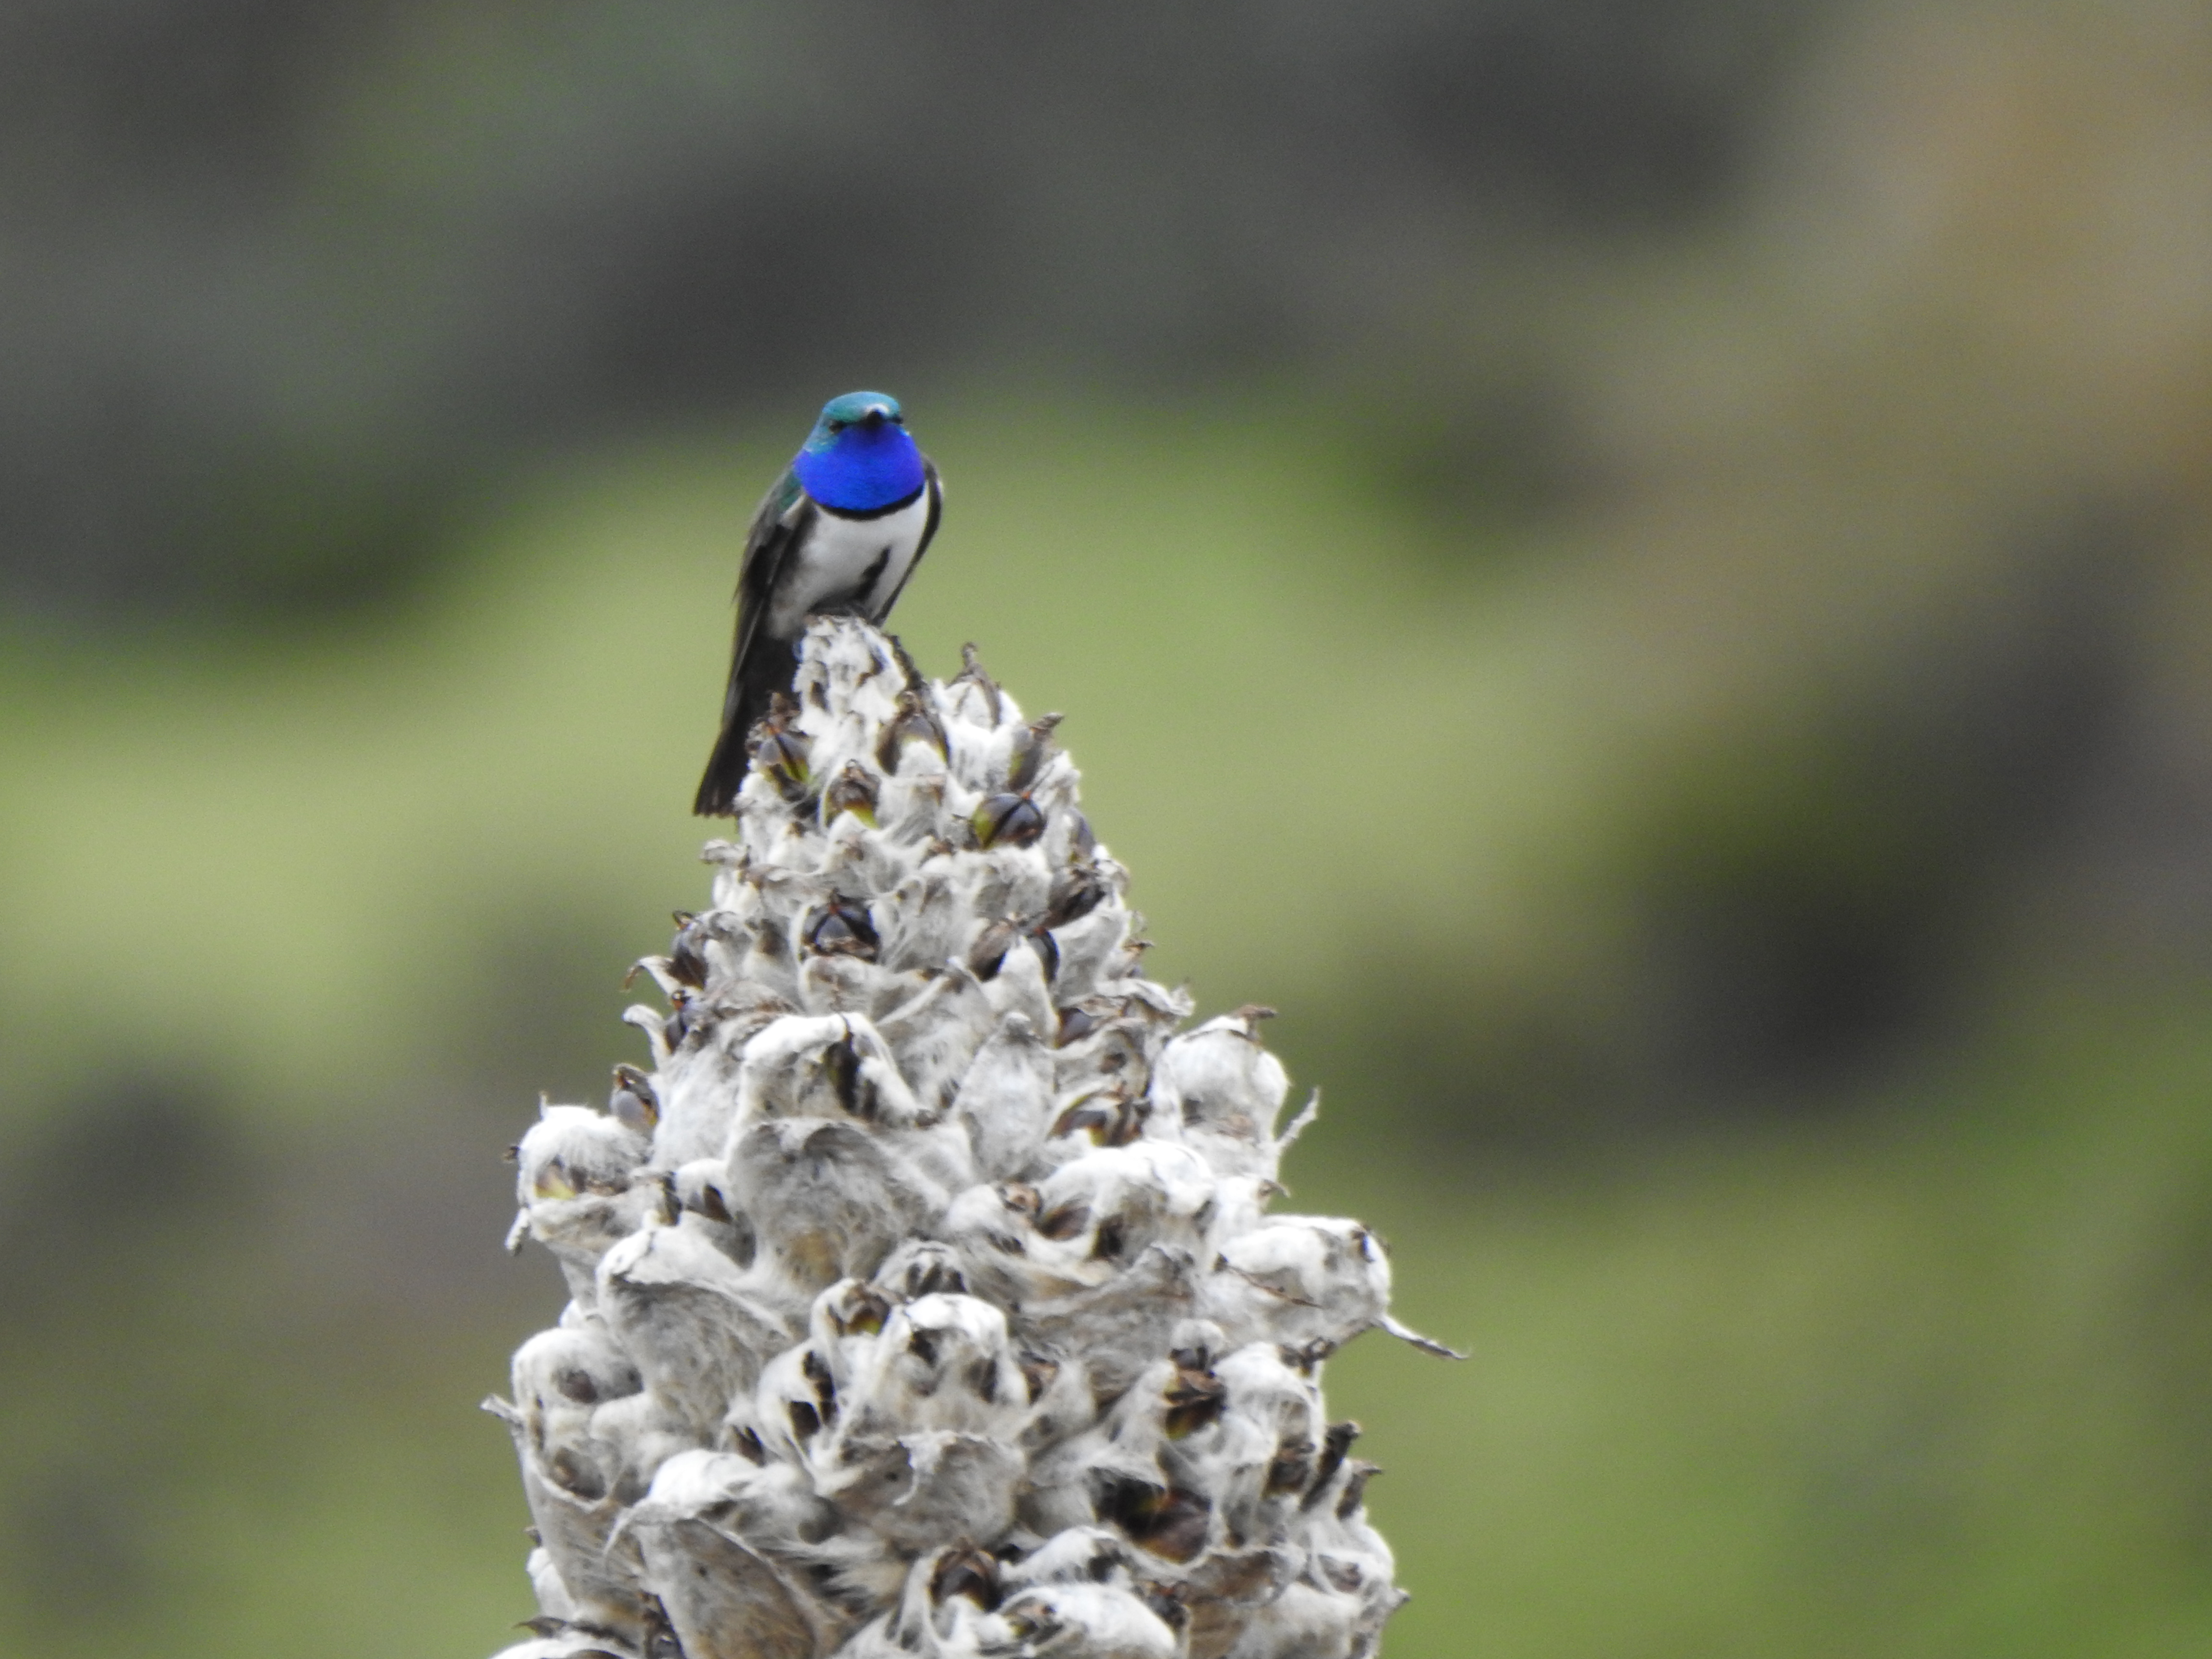 Alas de esperanza: liderando el futuro del colibrí Estrella de Garganta Azul